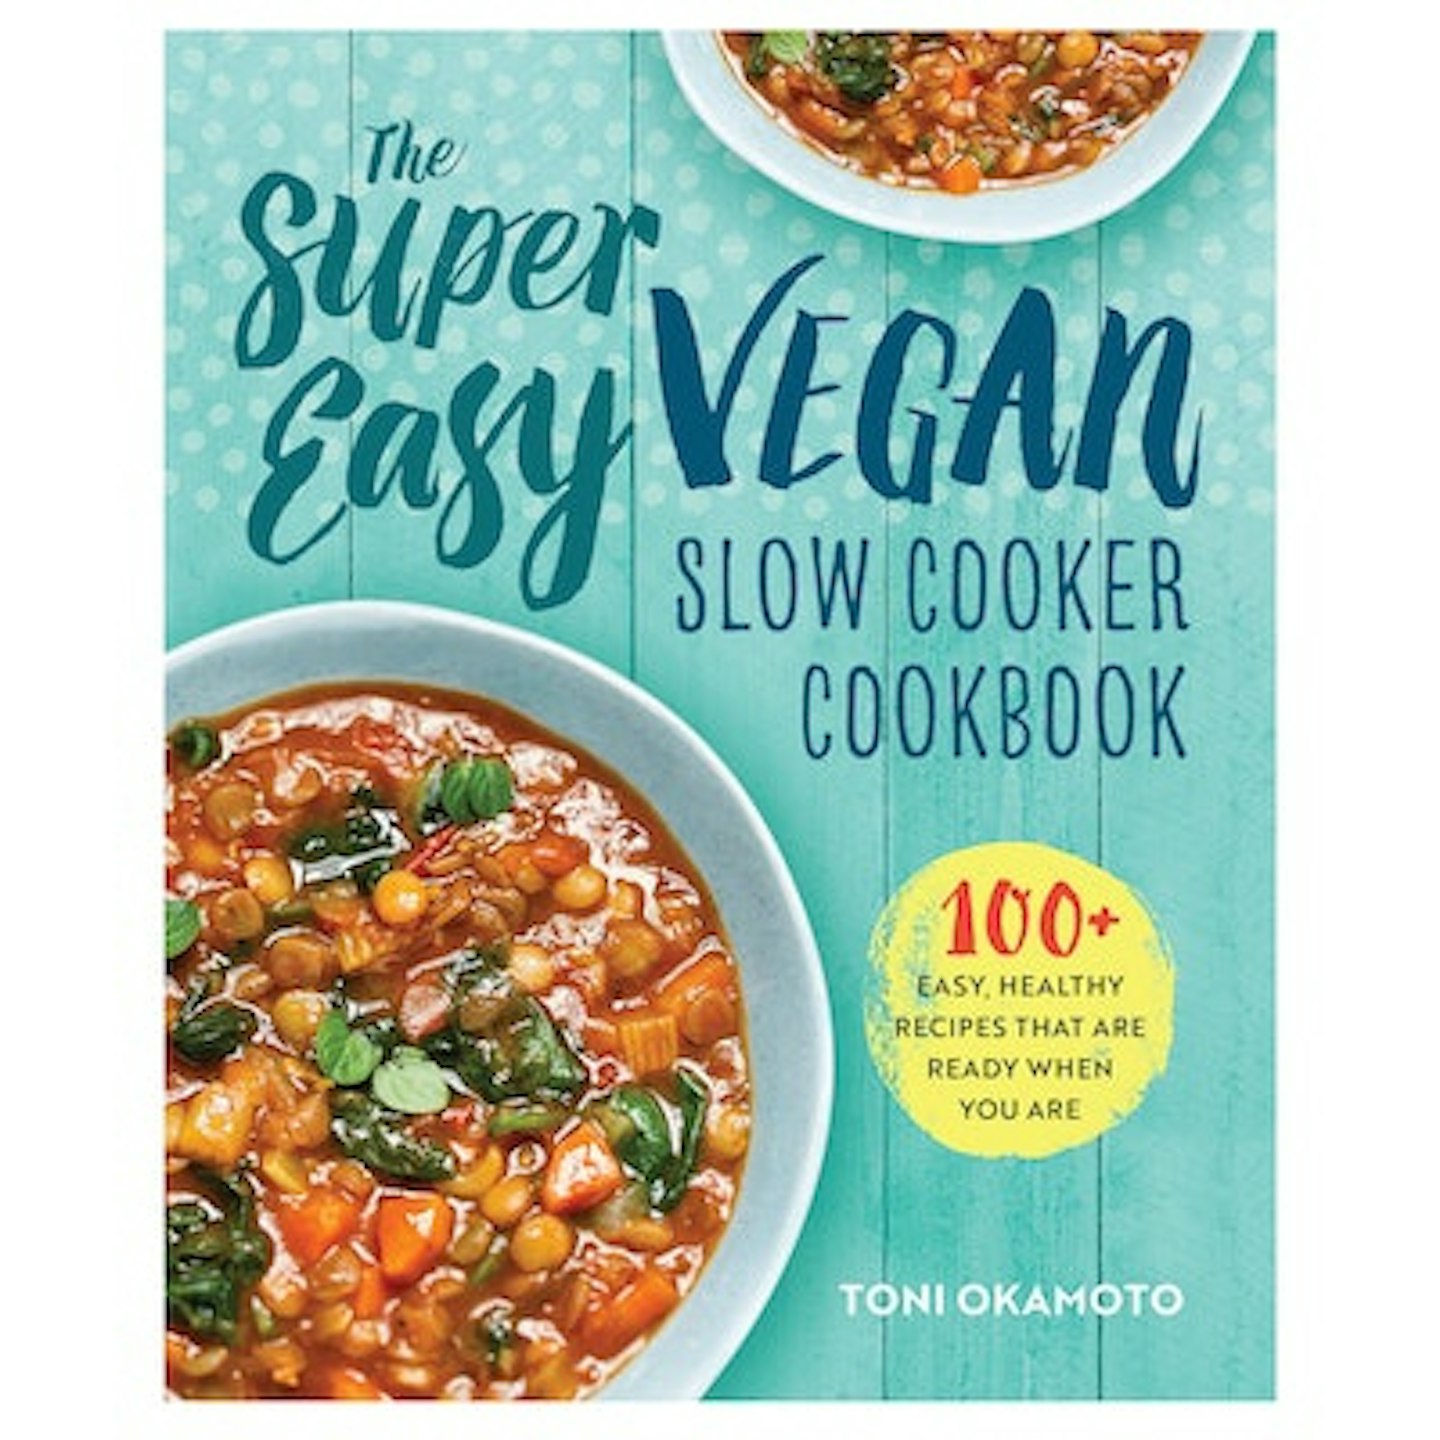 super-easy-vegan